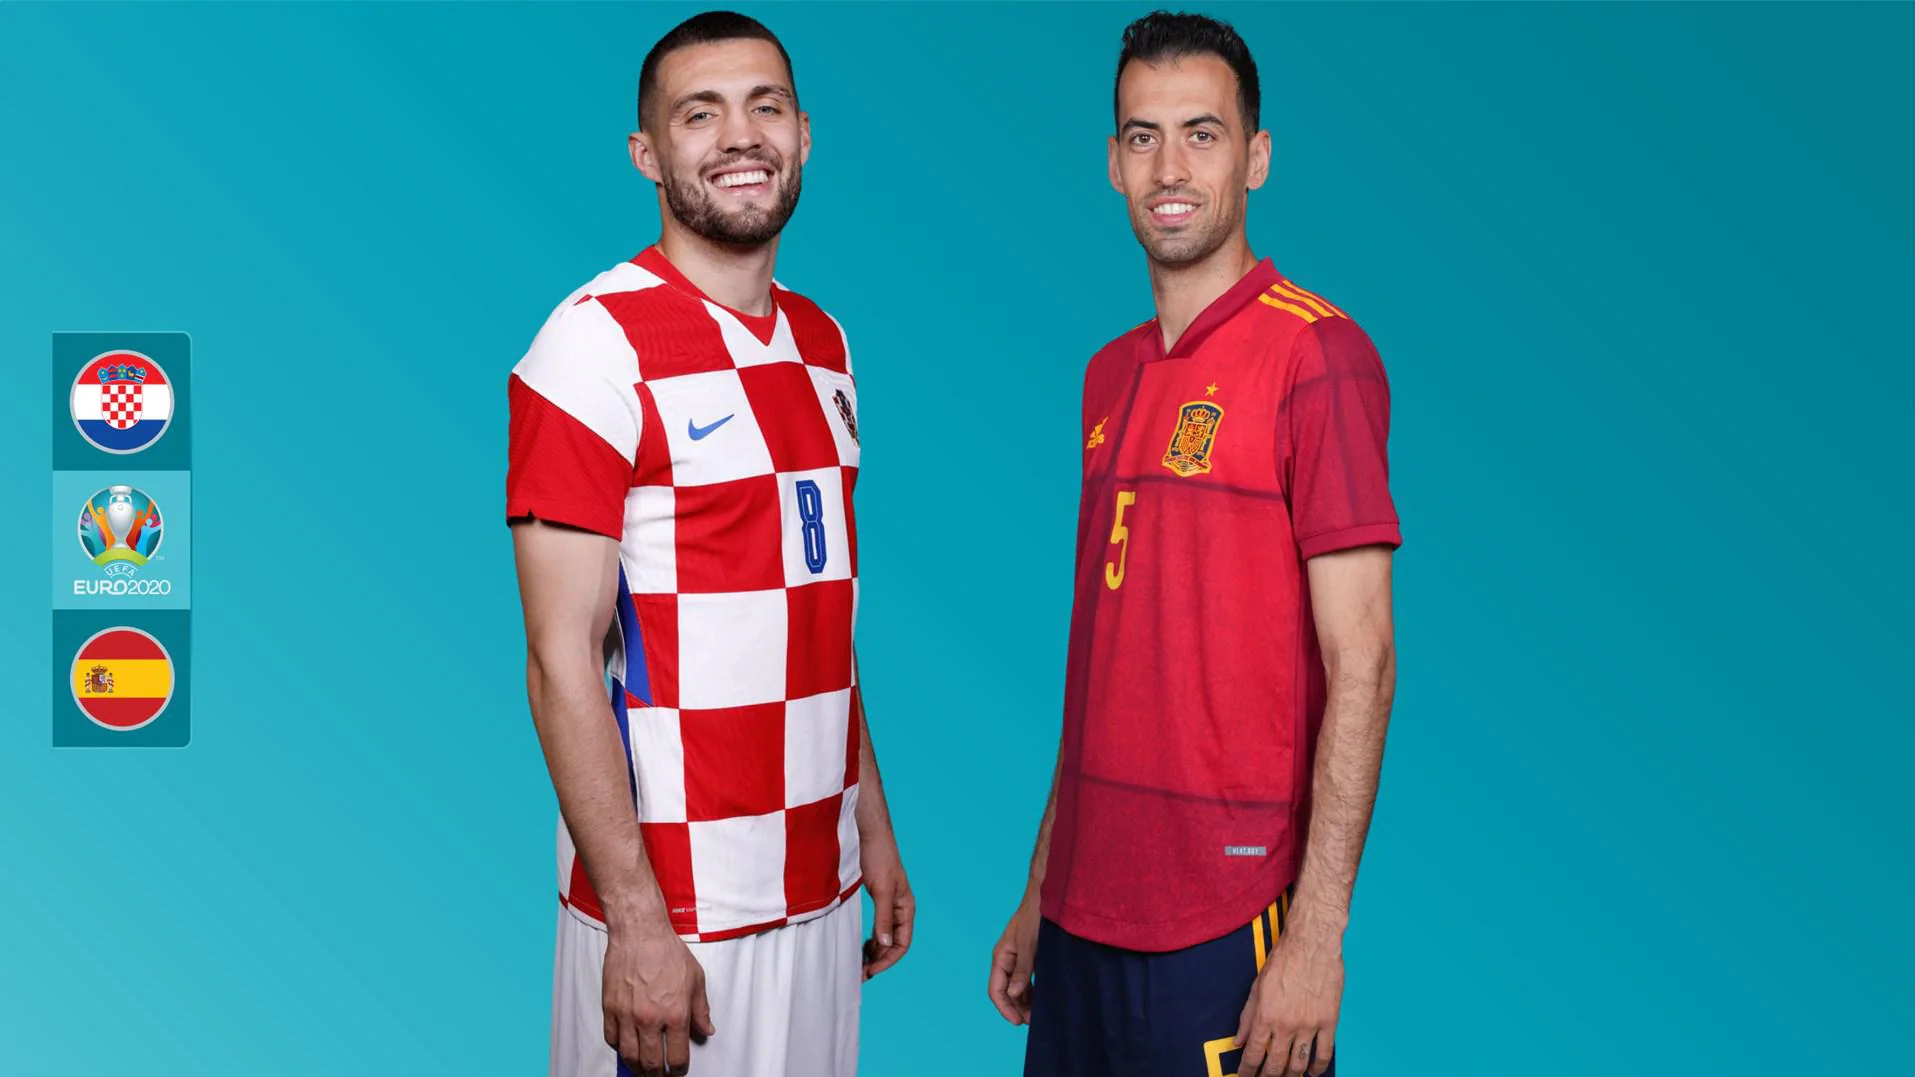 Nhận định bóng đá chuyên gia trận Croatia vs Tây Ban Nha - 23h00 ngày 28/06, vòng 1/8 EURO 2021